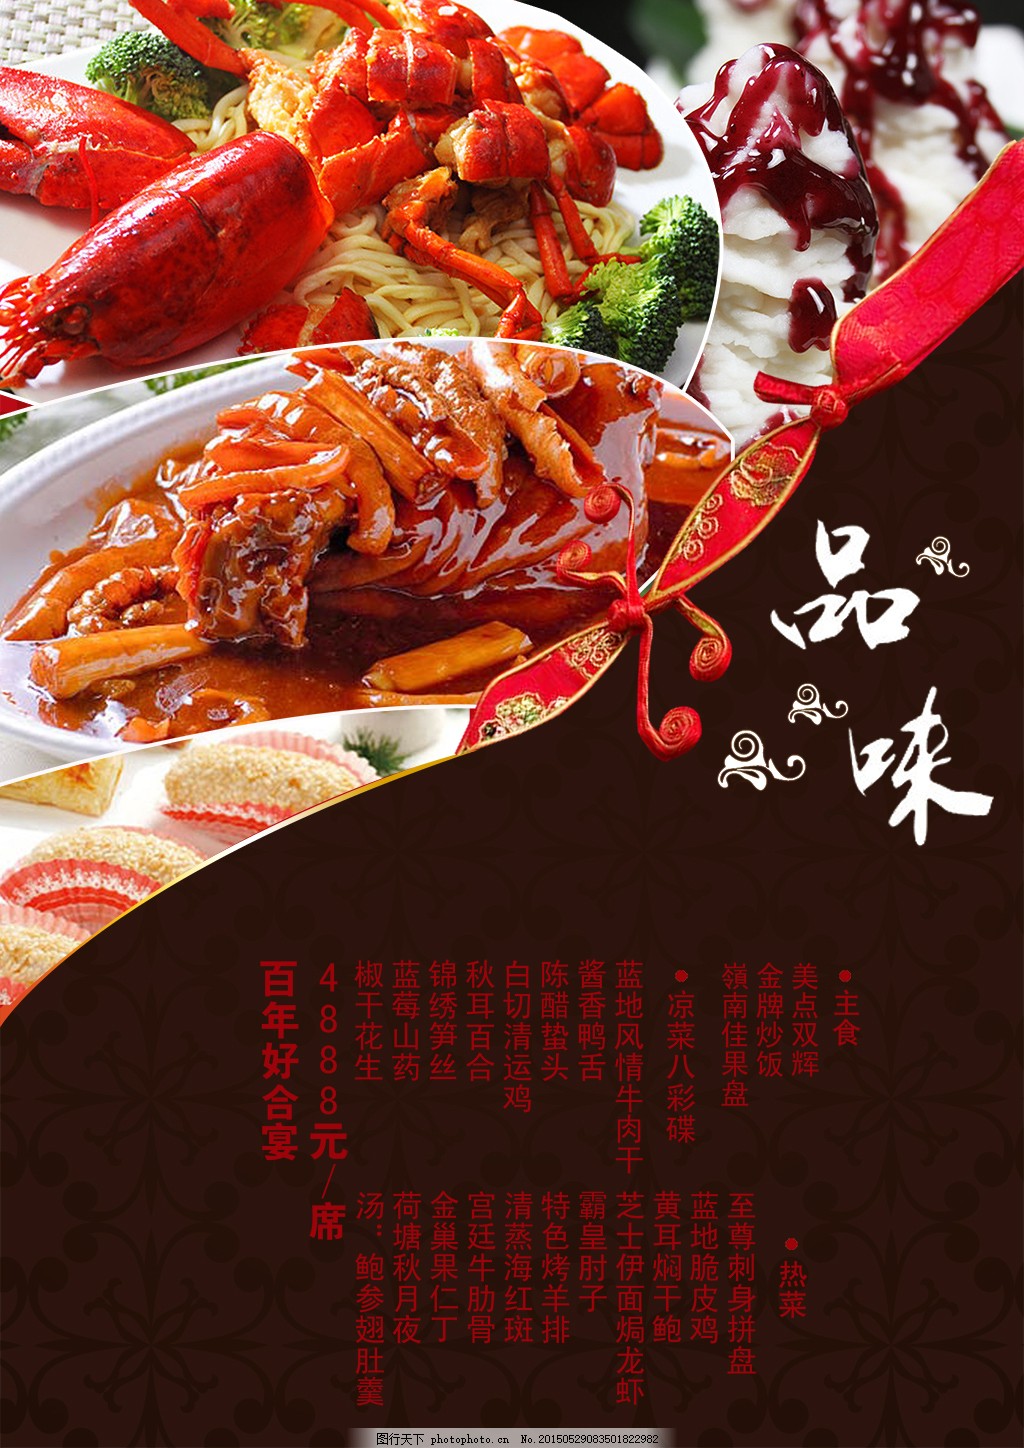 外婆经典小菜(杨浦店)餐厅、菜单、团购 - 上海 - 订餐小秘书